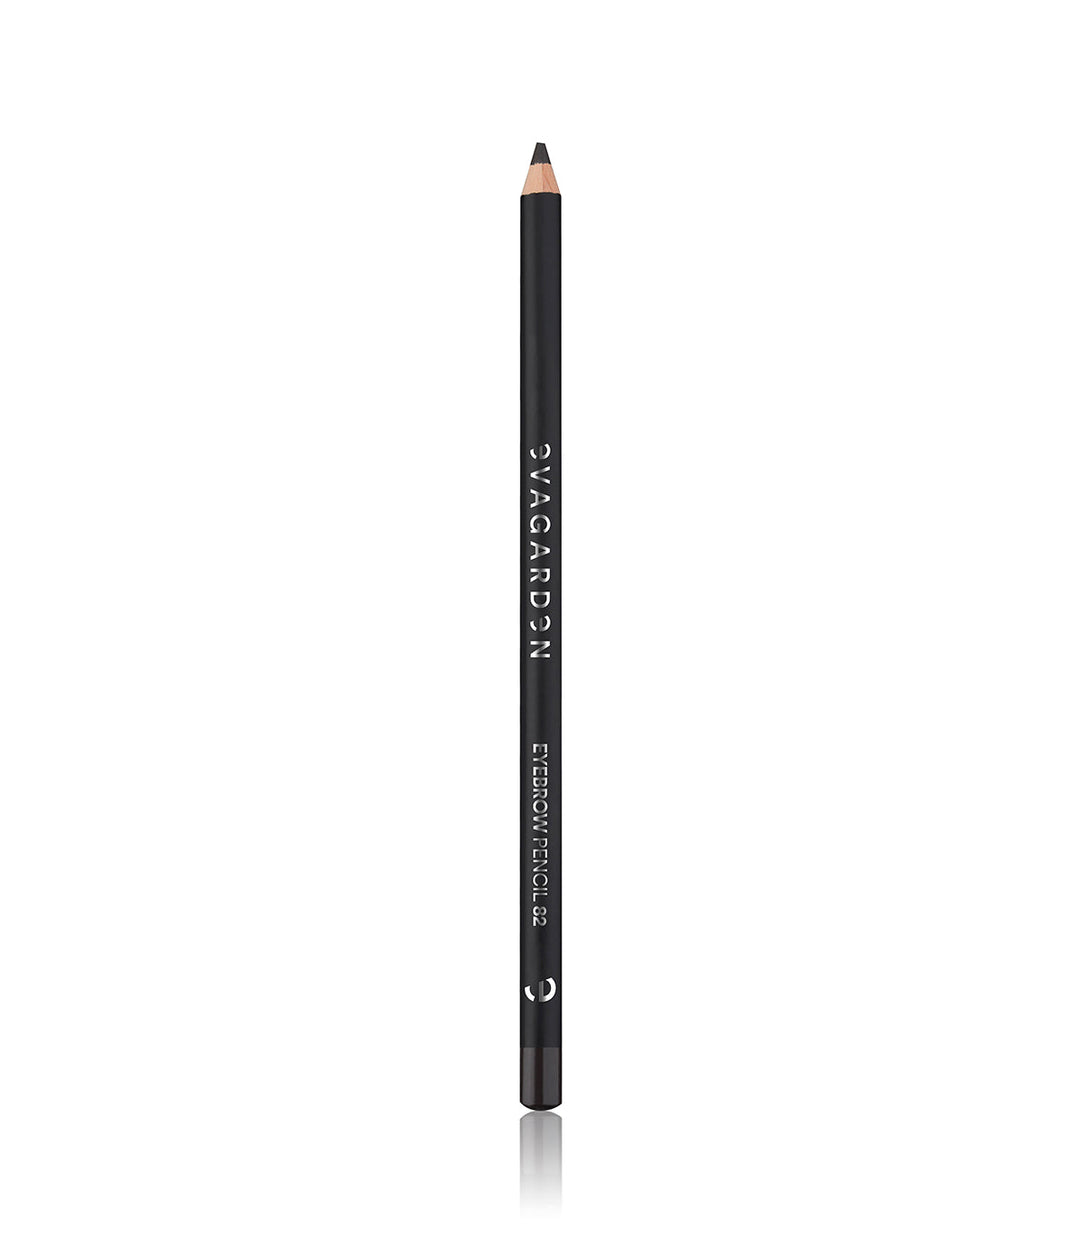 EVAGARDEN make up Eyebrow Pencil